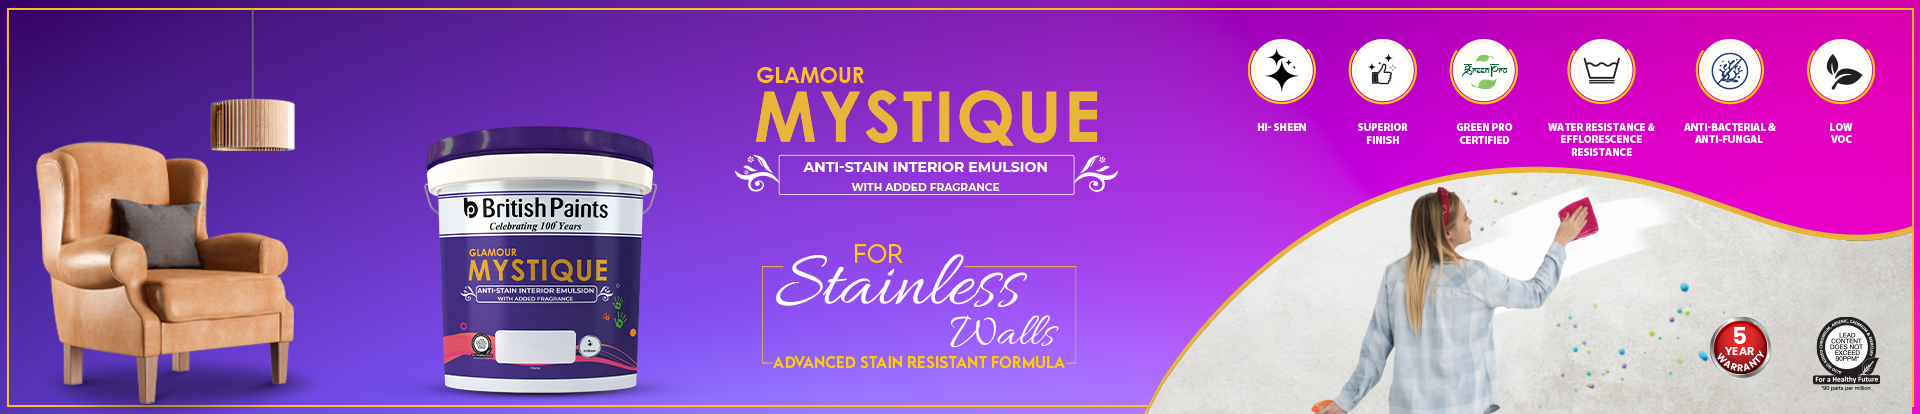 Glamour Mystique Anti-Stain Interior Emulsion